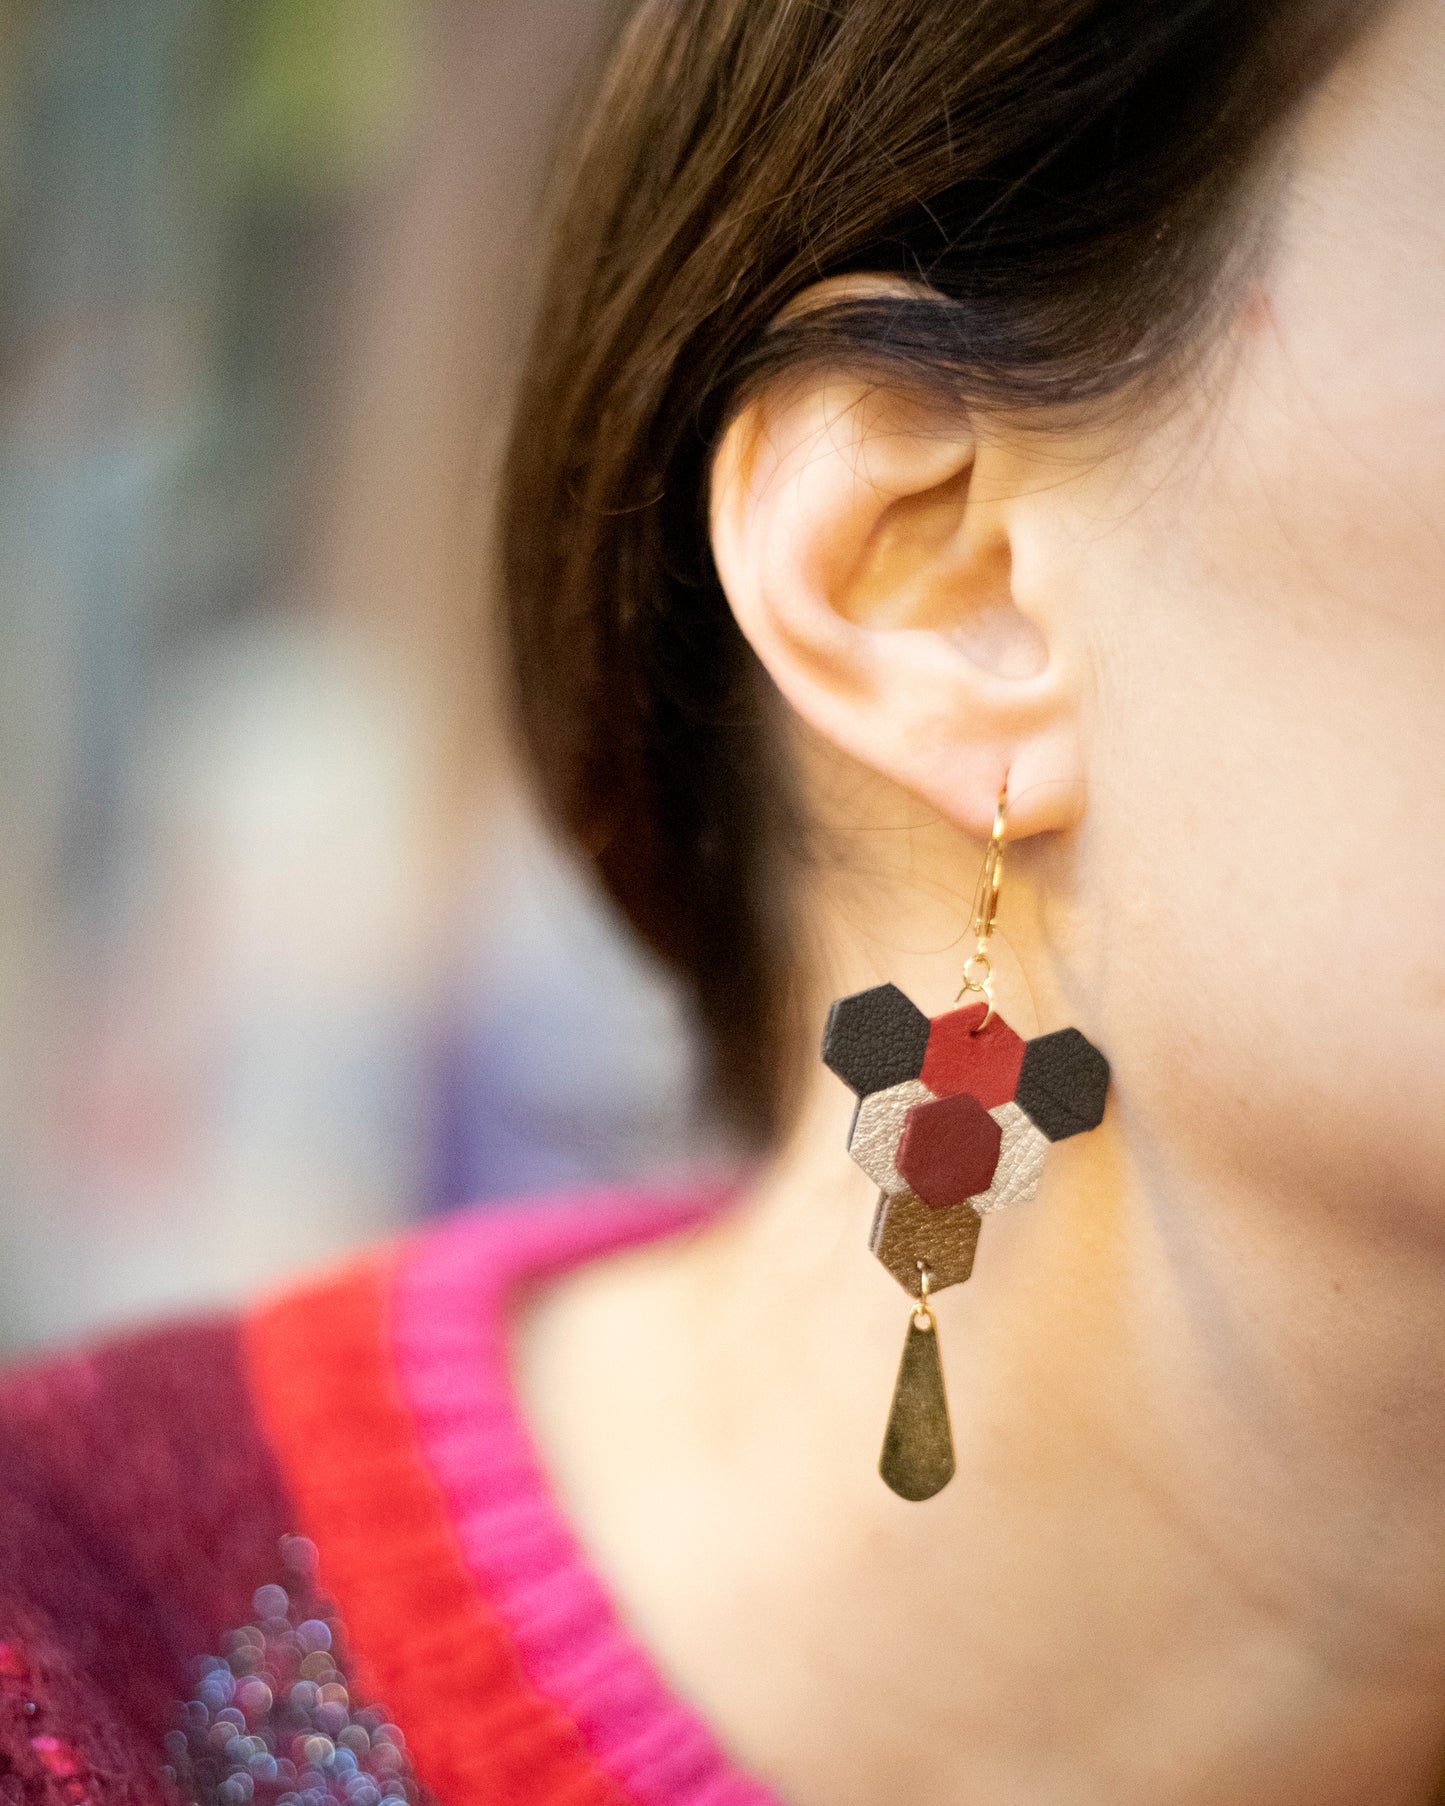 Audrey bronze earrings